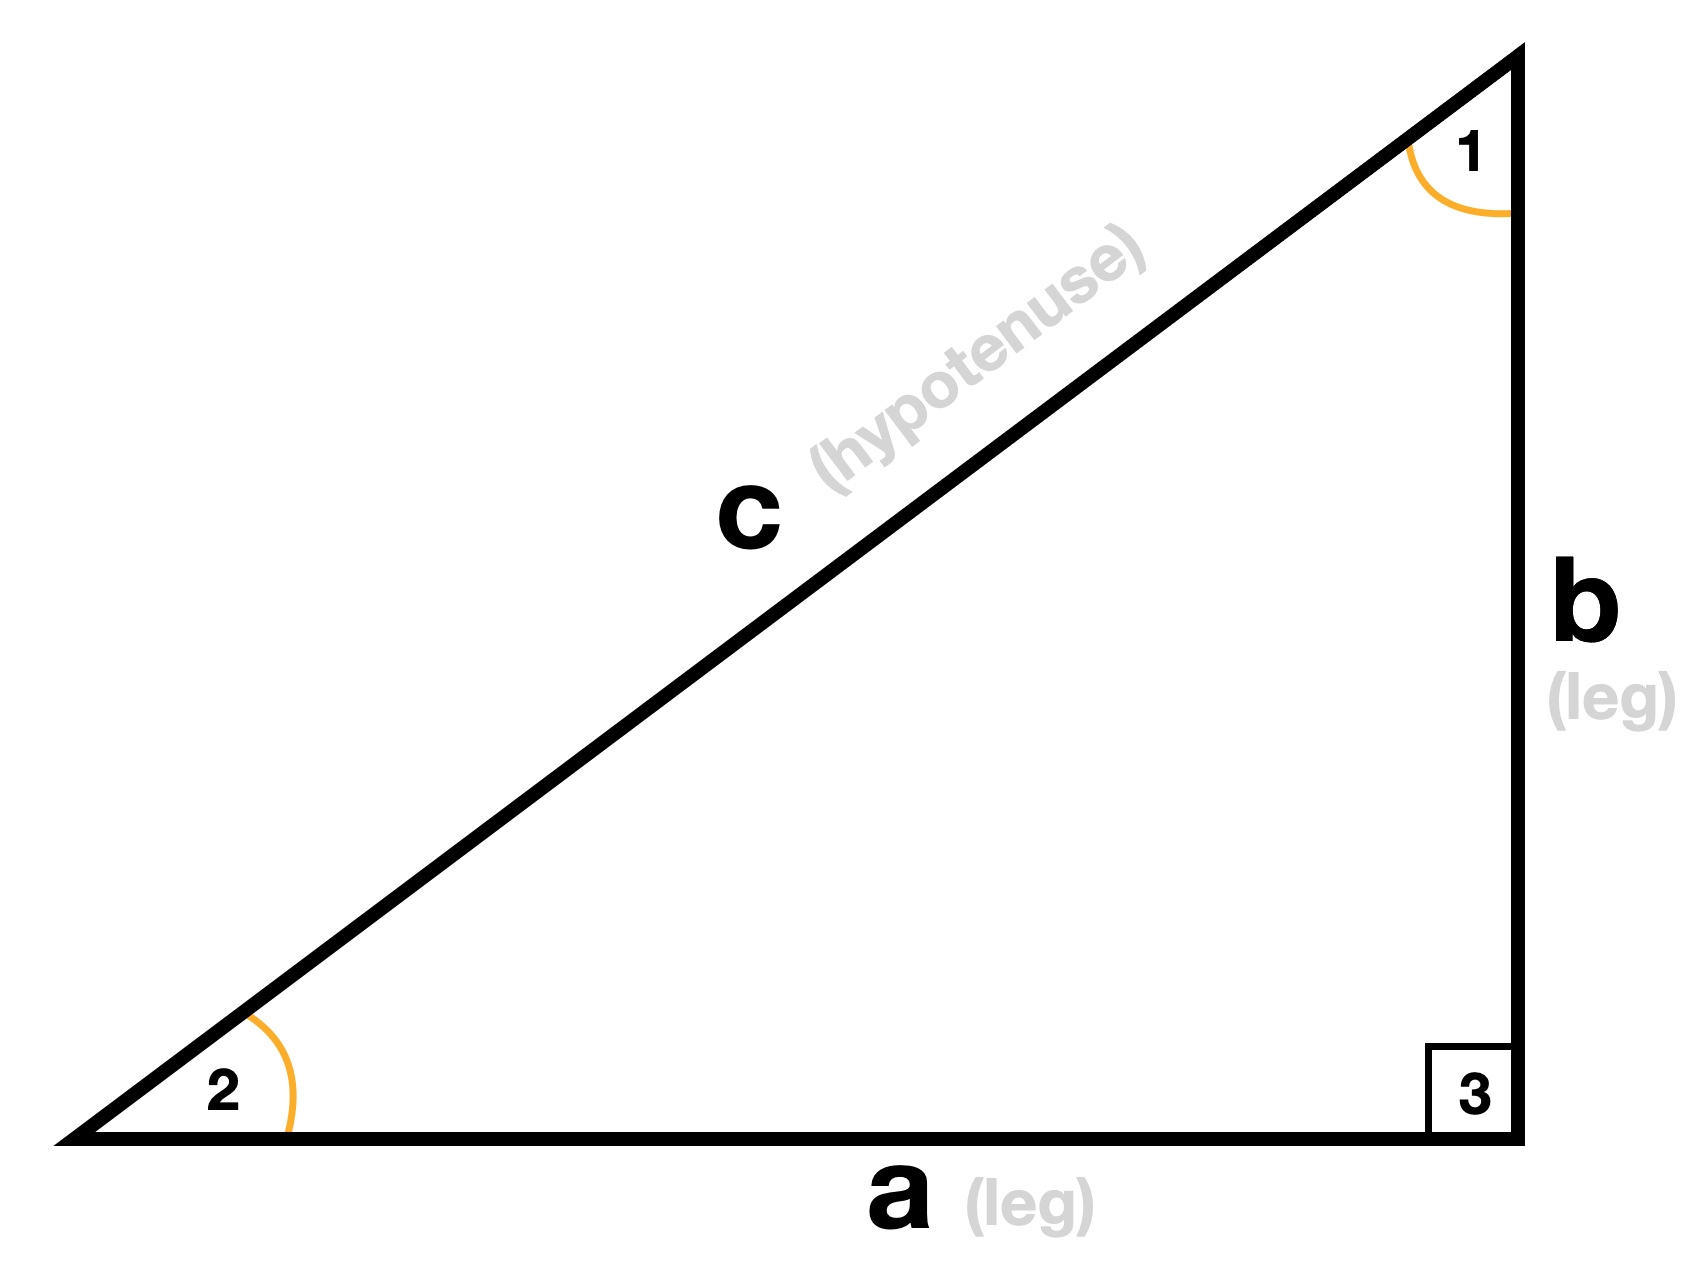 perimeter of a right triangle